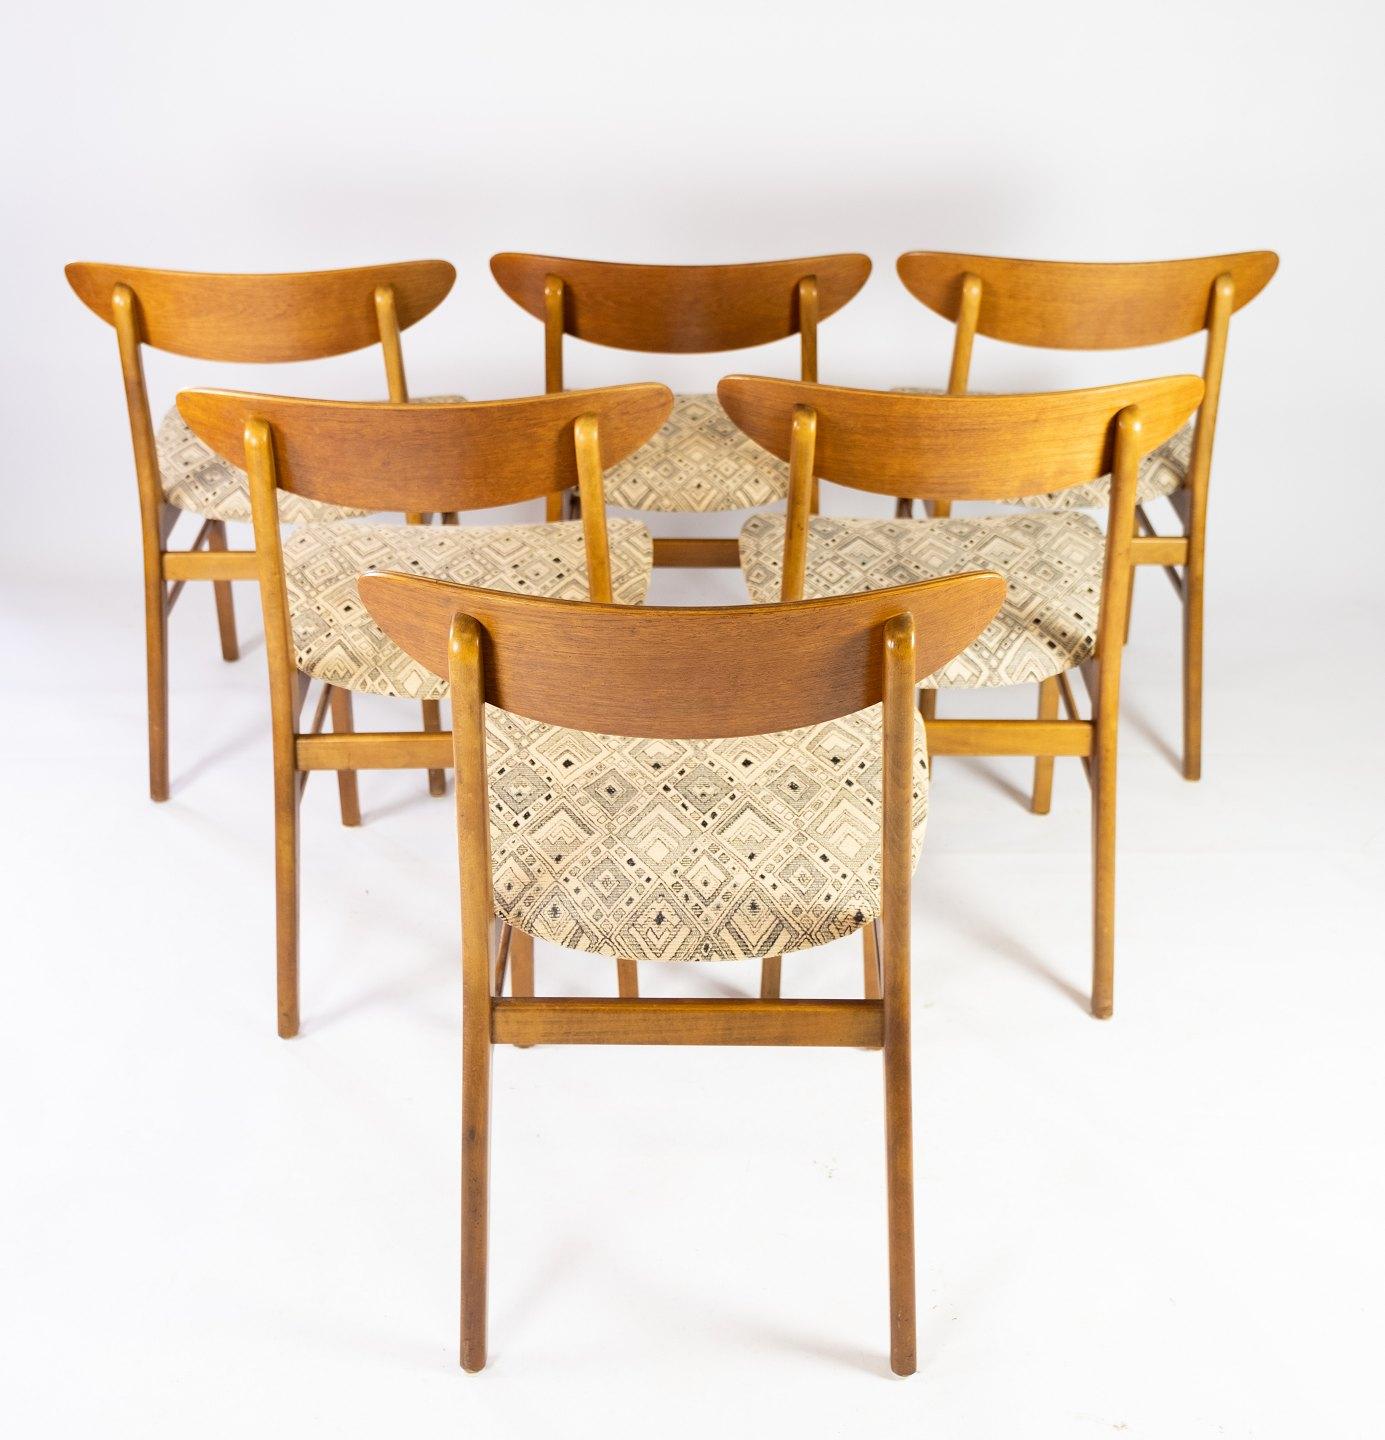 Satz von sechs Esszimmerstühlen aus Teakholz und gepolstert mit hellem Stoff, dänisches Design, hergestellt von Farstrup Furniture in den 1960er Jahren. Die Stühle sind in hervorragendem Vintage-Zustand.
  